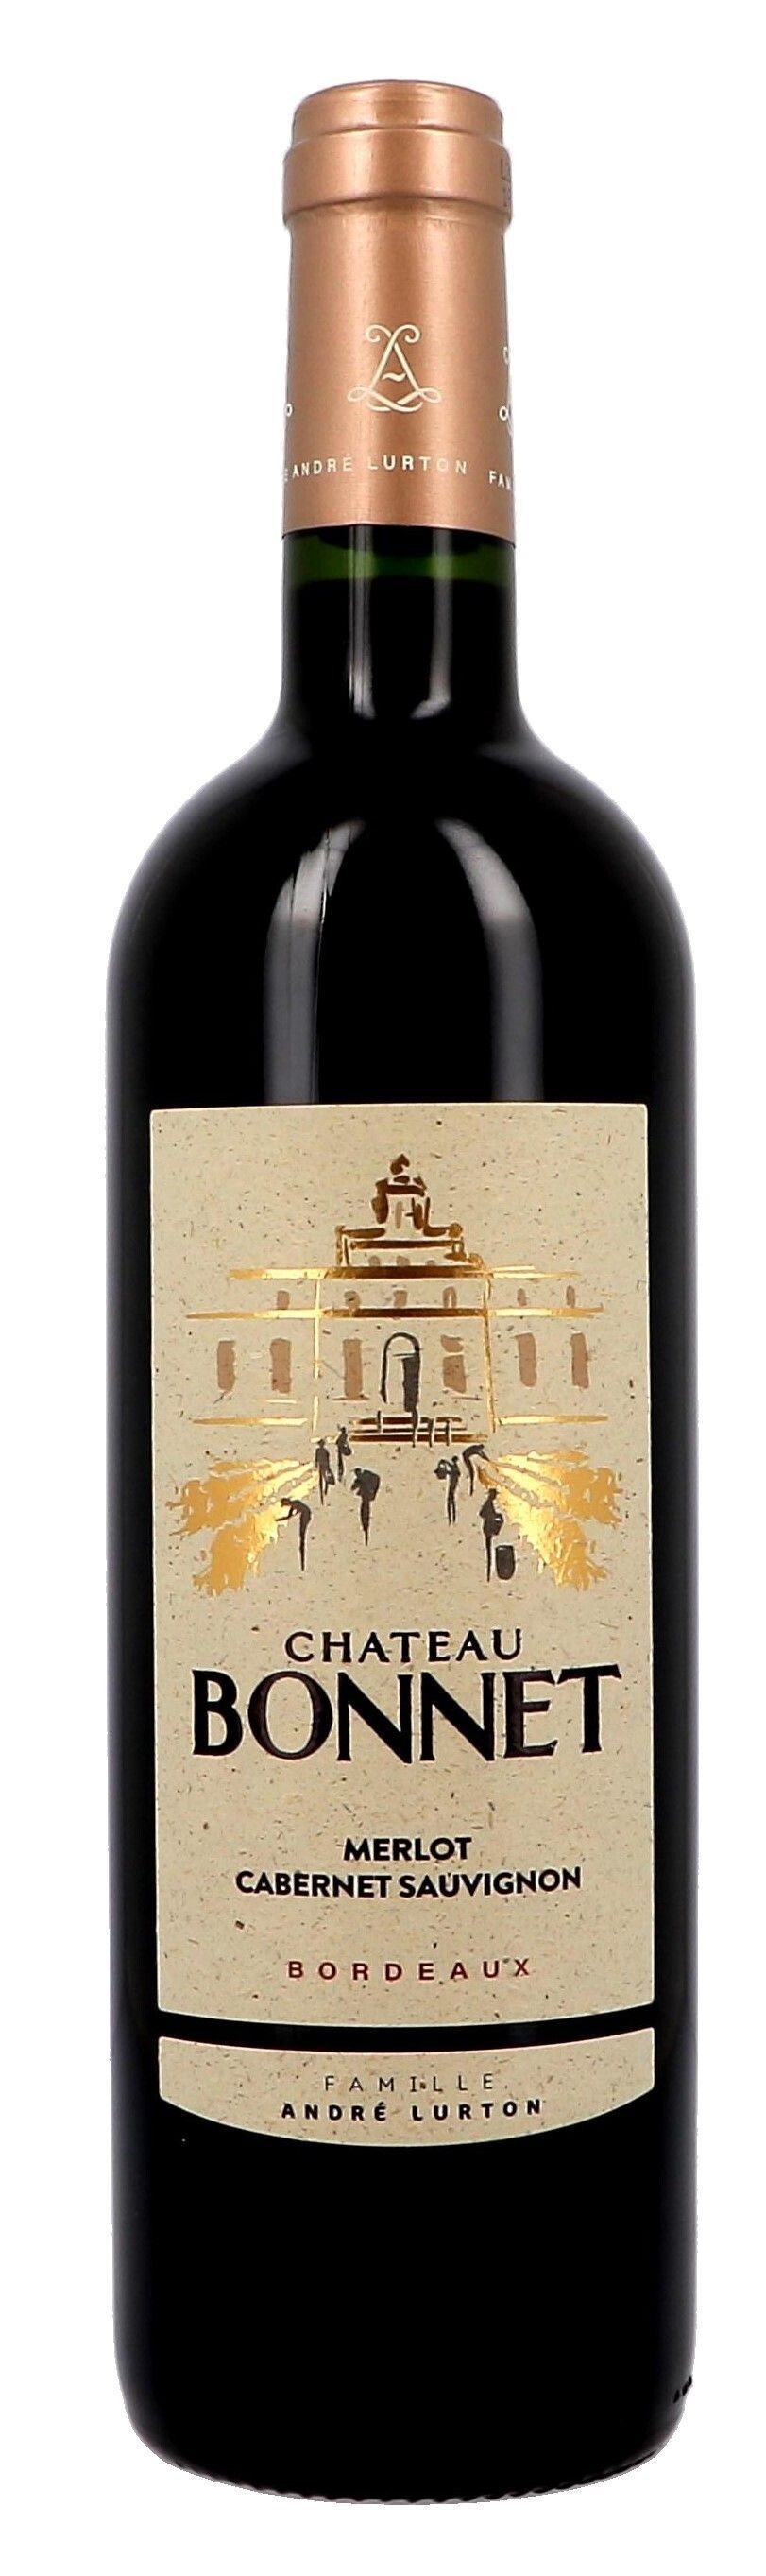 Chateau Bonnet red 75cl 2018 Bordeaux Andre Lurton